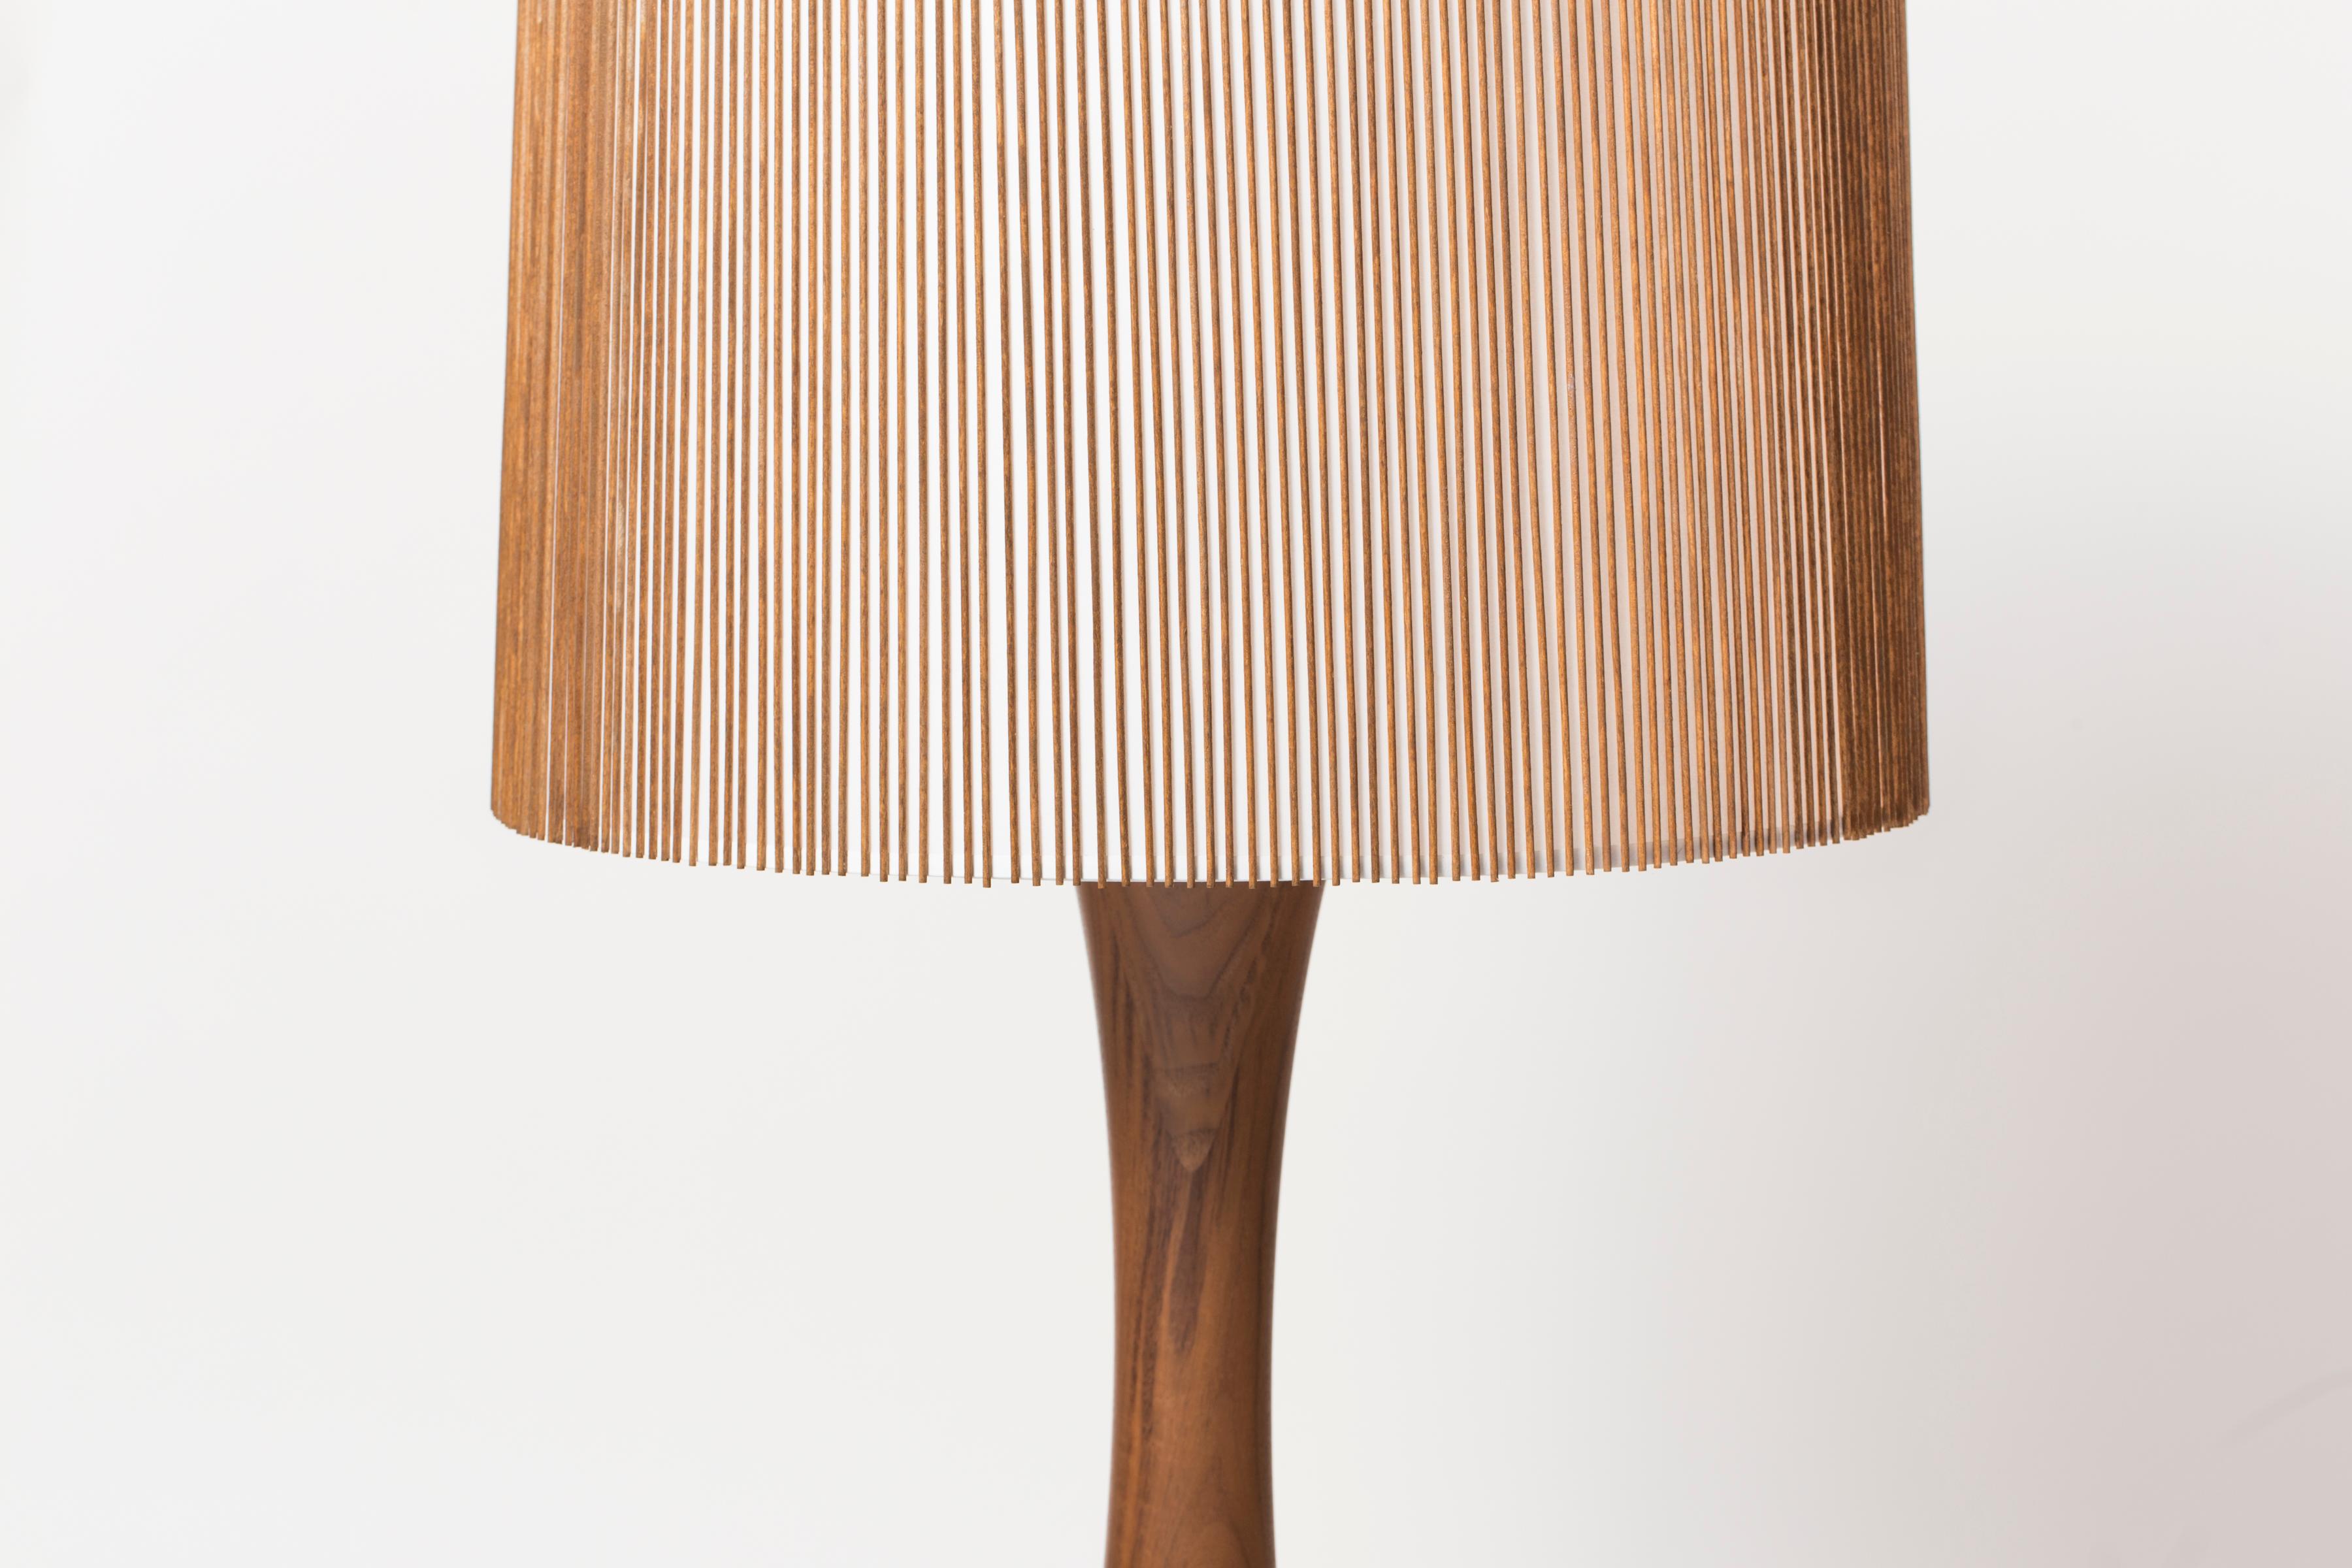 Die Hourglass Tischleuchte ist Teil der neu aufgelegten Smilow Lighting Collection, die ursprünglich 1956 von Mel Smilow entworfen und 2017 von seiner Tochter Judy Smilow offiziell wieder eingeführt wurde. Die skulpturalen und von der Natur